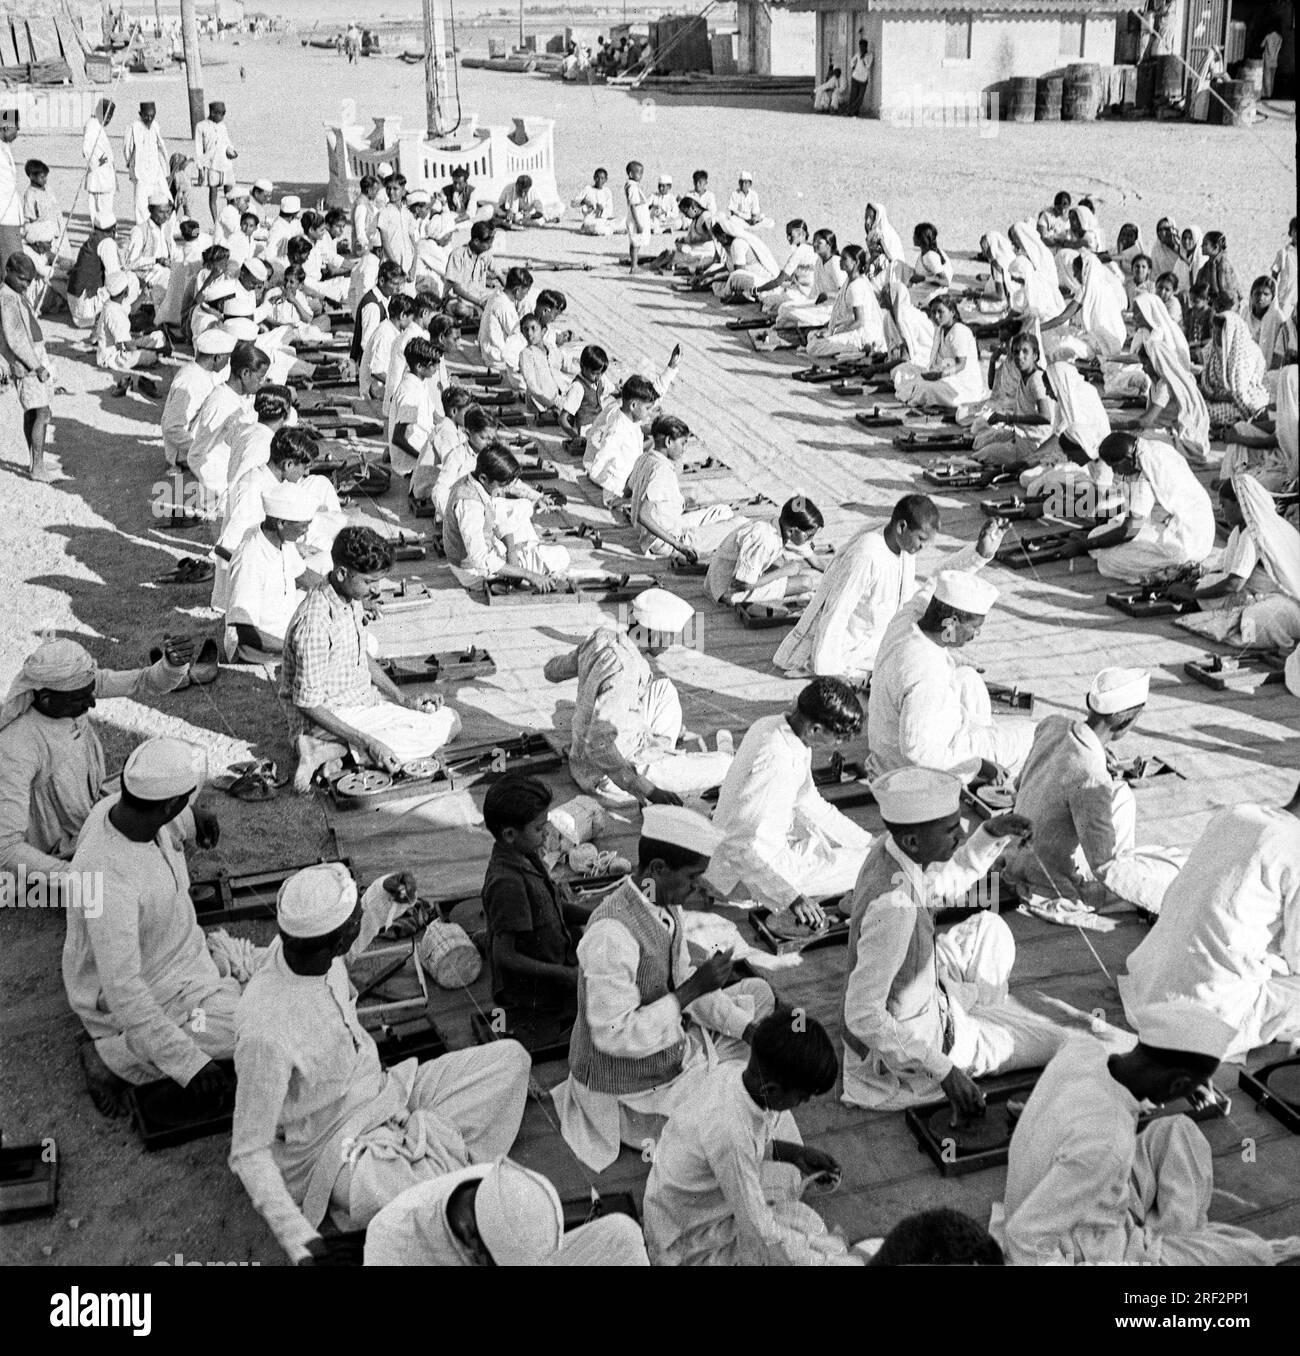 Vecchia immagine vintage in bianco e nero degli anni '1900 degli indiani che imparano a girare la ruota a filato usano l'India 1940s Foto Stock